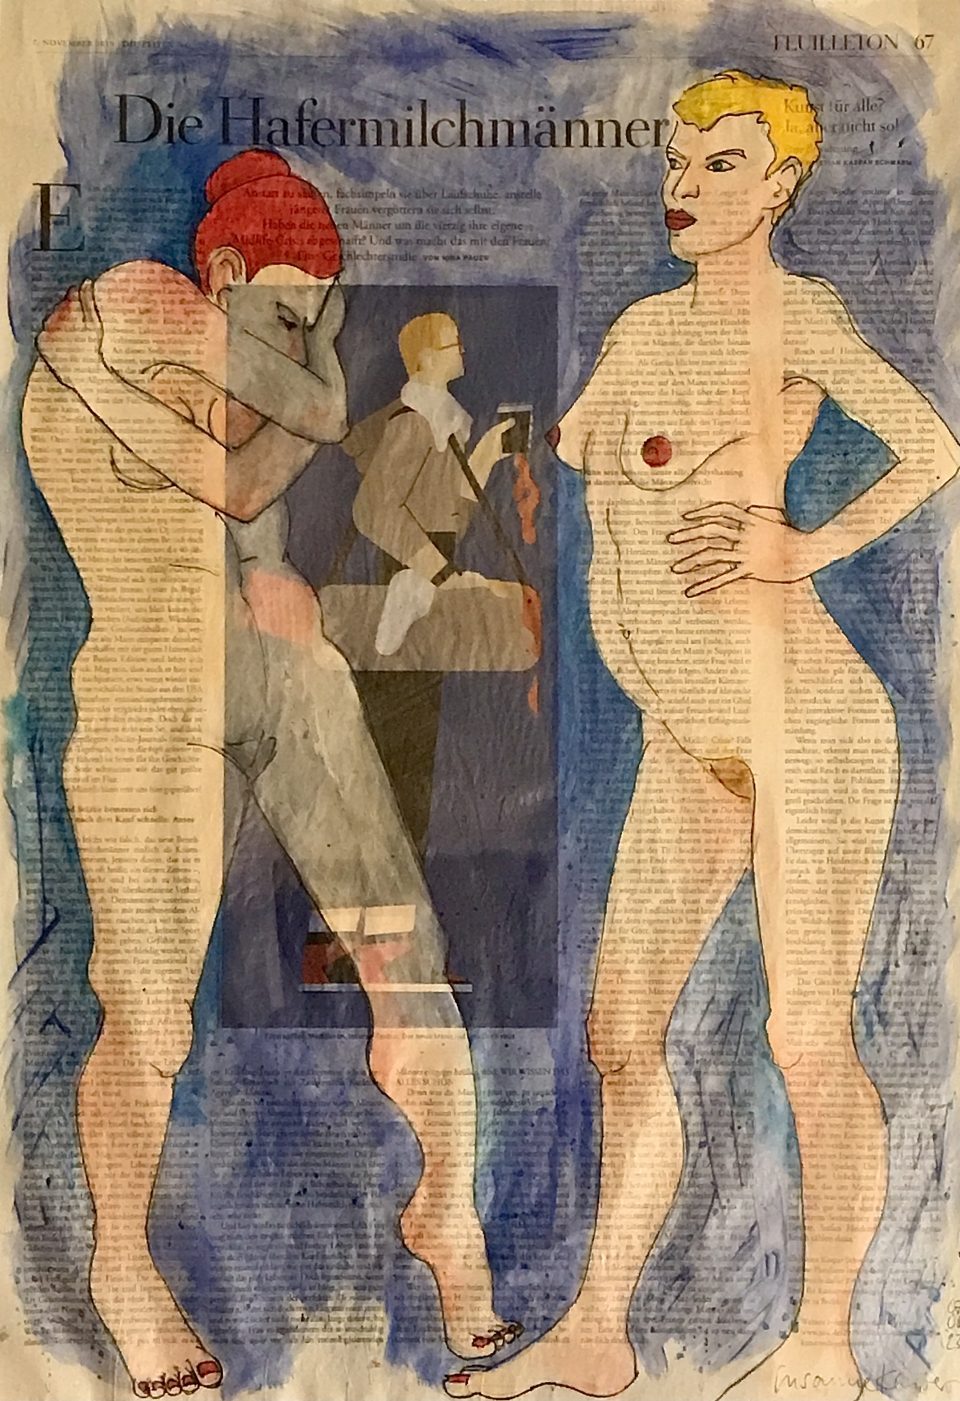 Die Hafermilchmänner – zweimal weiblicher Akt, auf ganzer Zeitungsseite 56 x 40 cm mit Überschrift "Die Hafermilchmänner"